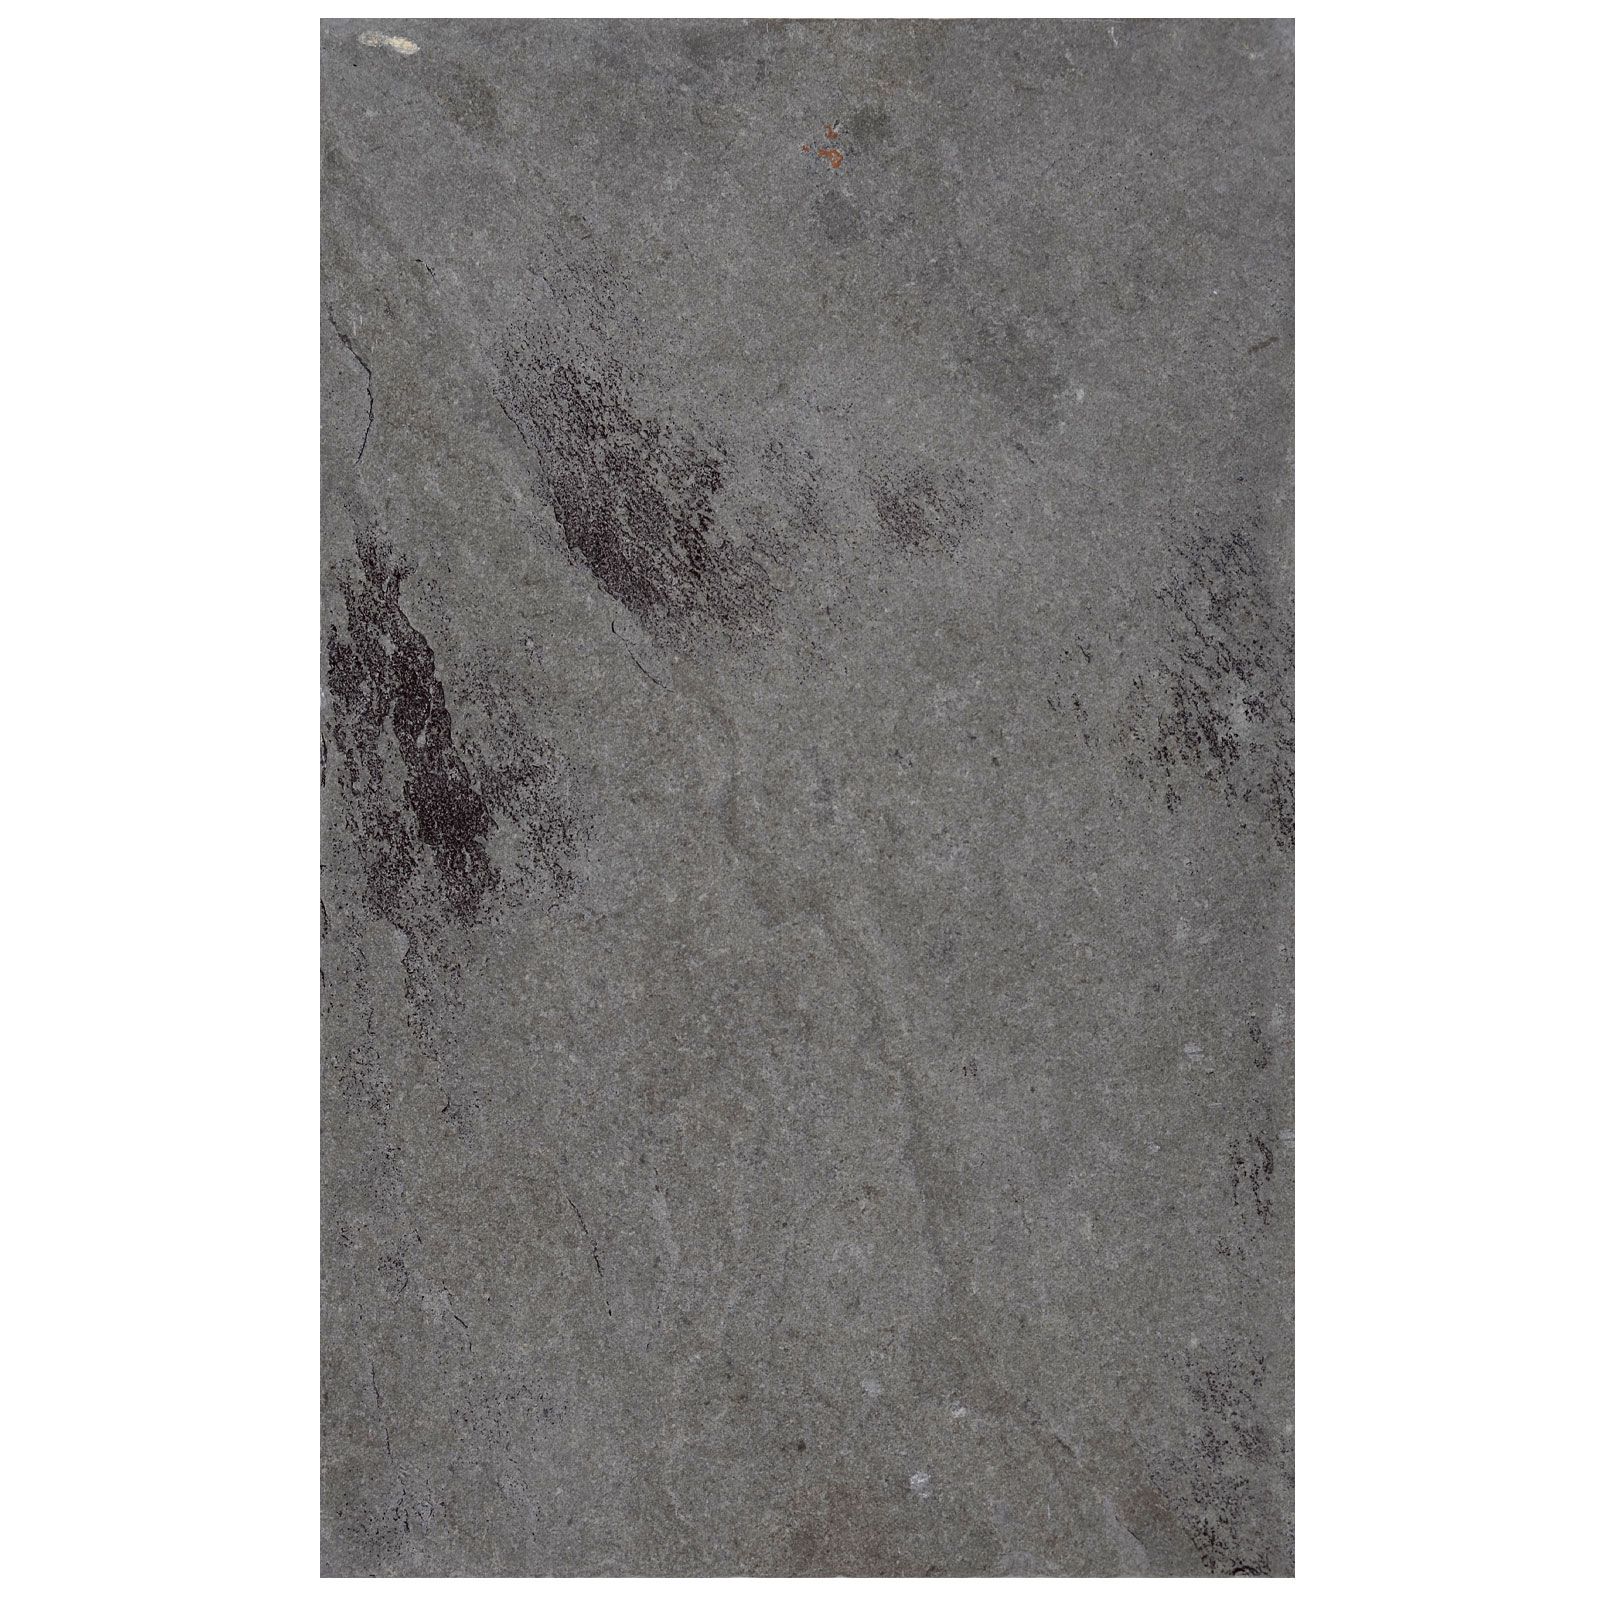 Płytki Wapień Mississipi Grey Historical 56xFLx2 cm (3,942 m2)